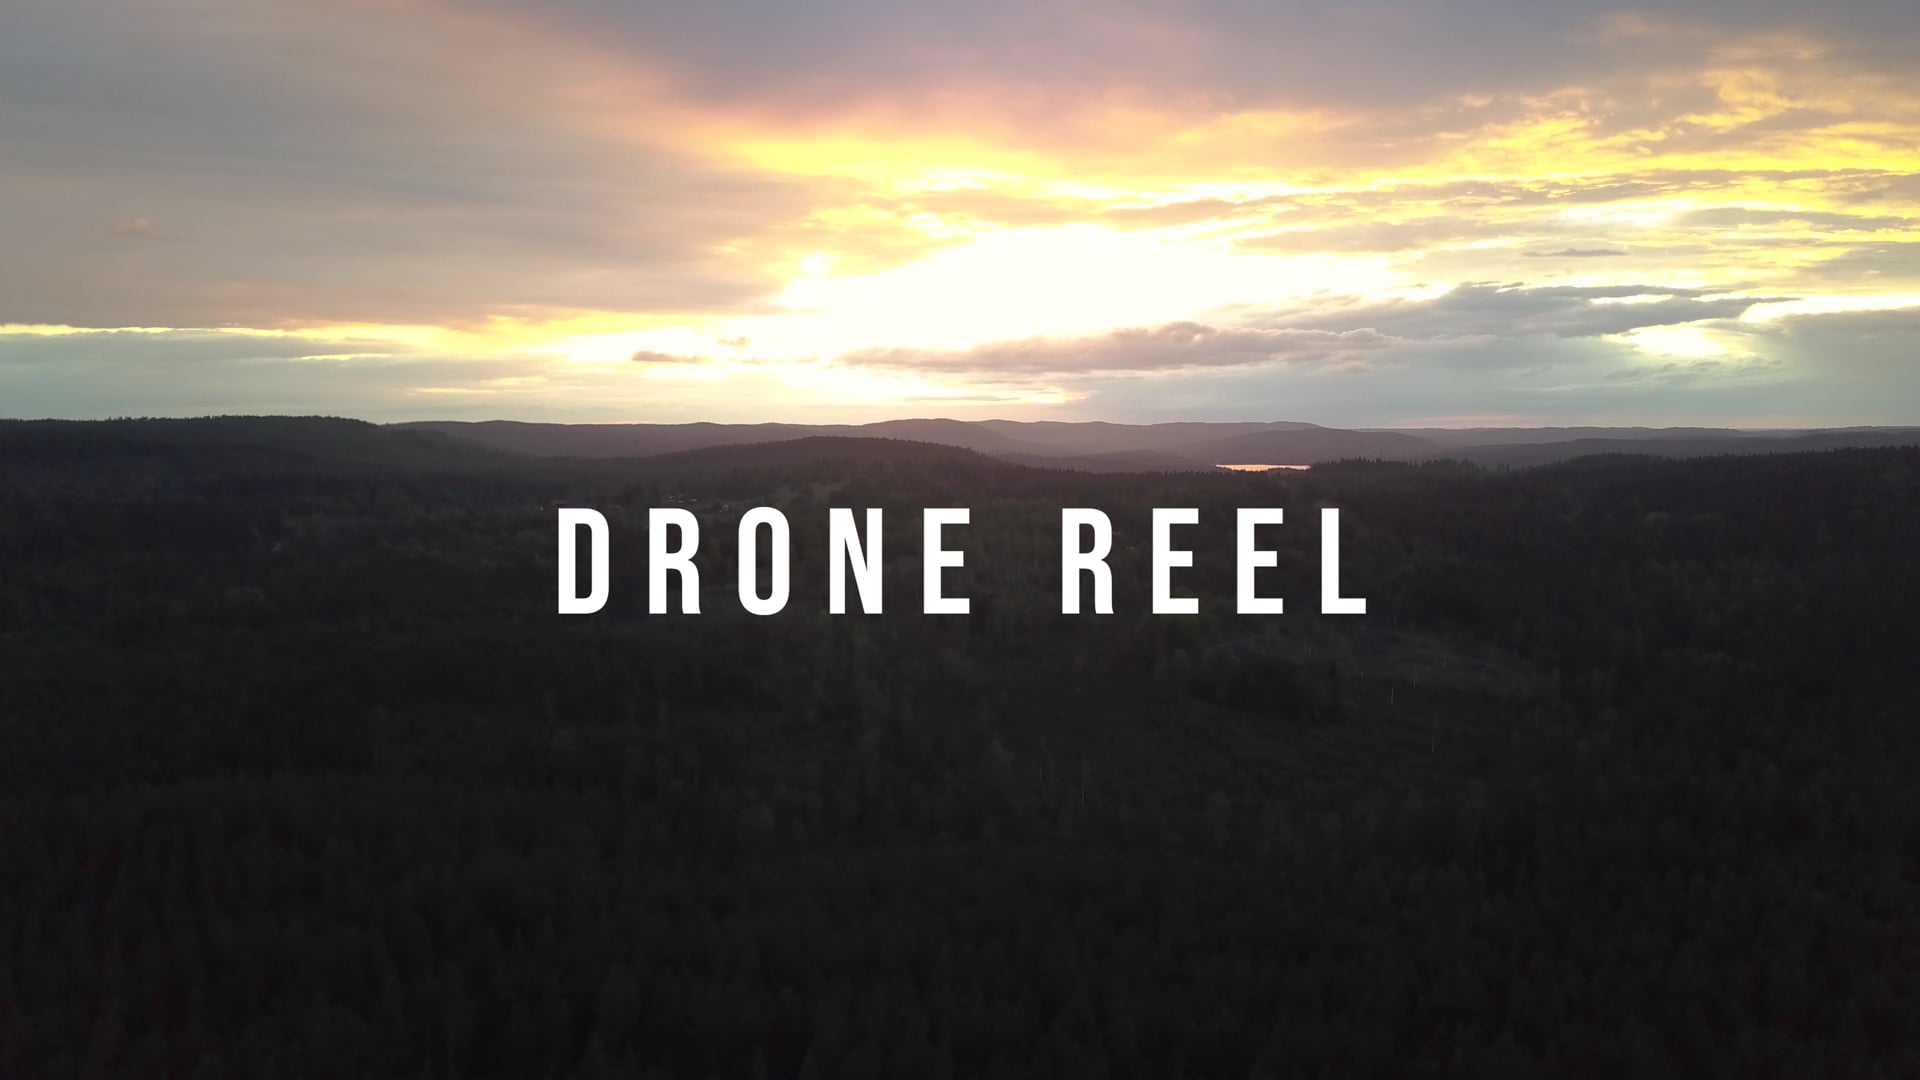 Drone reel 2020